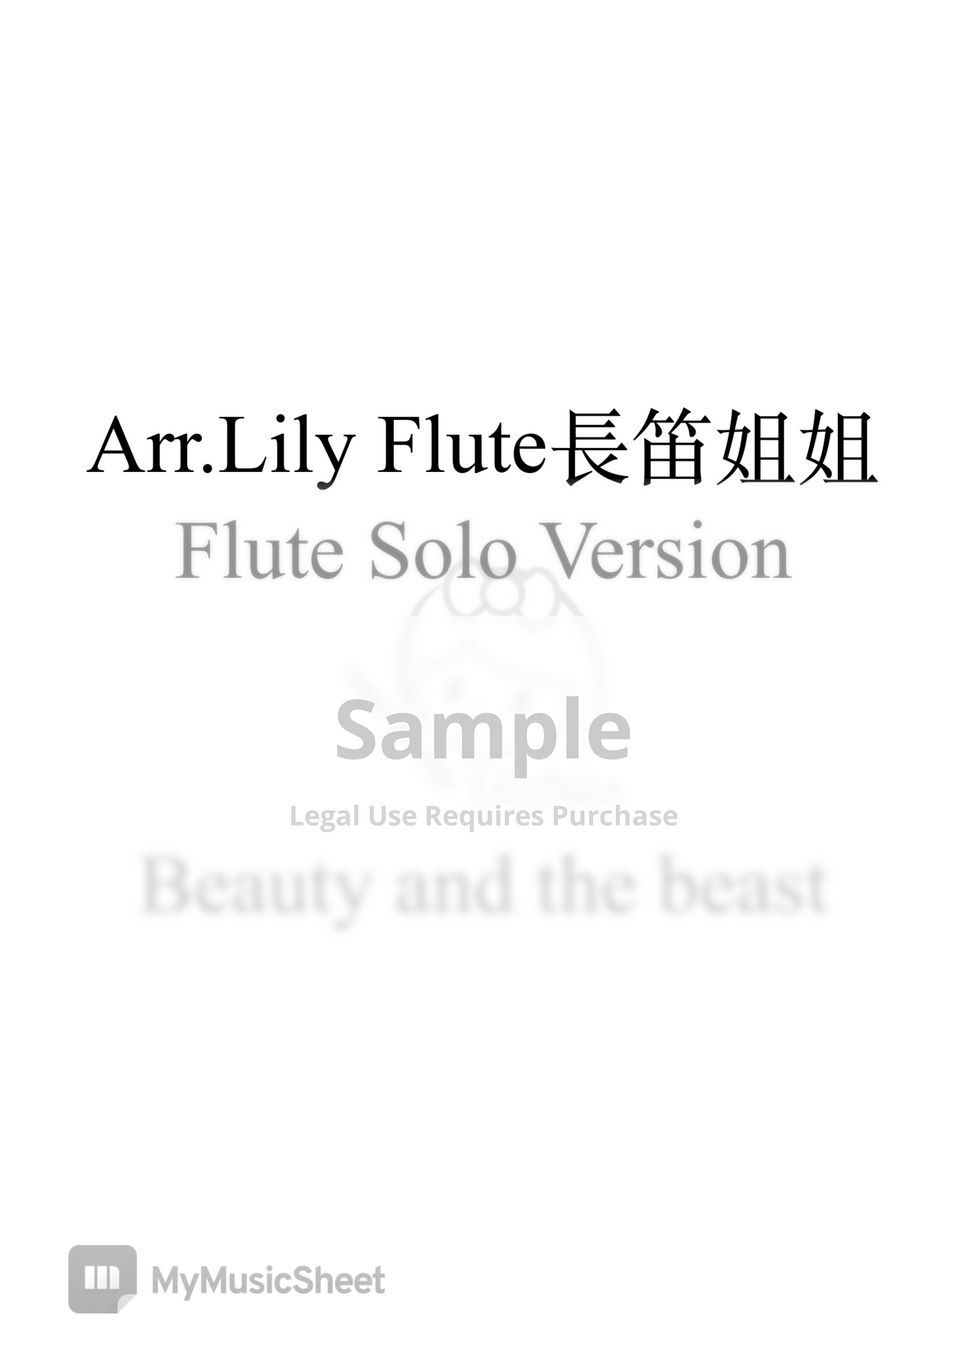 美女與野獸 - Beauty and the Beast Solo Version (附贈伴奏在YT) by Lily Flute 長笛姐姐